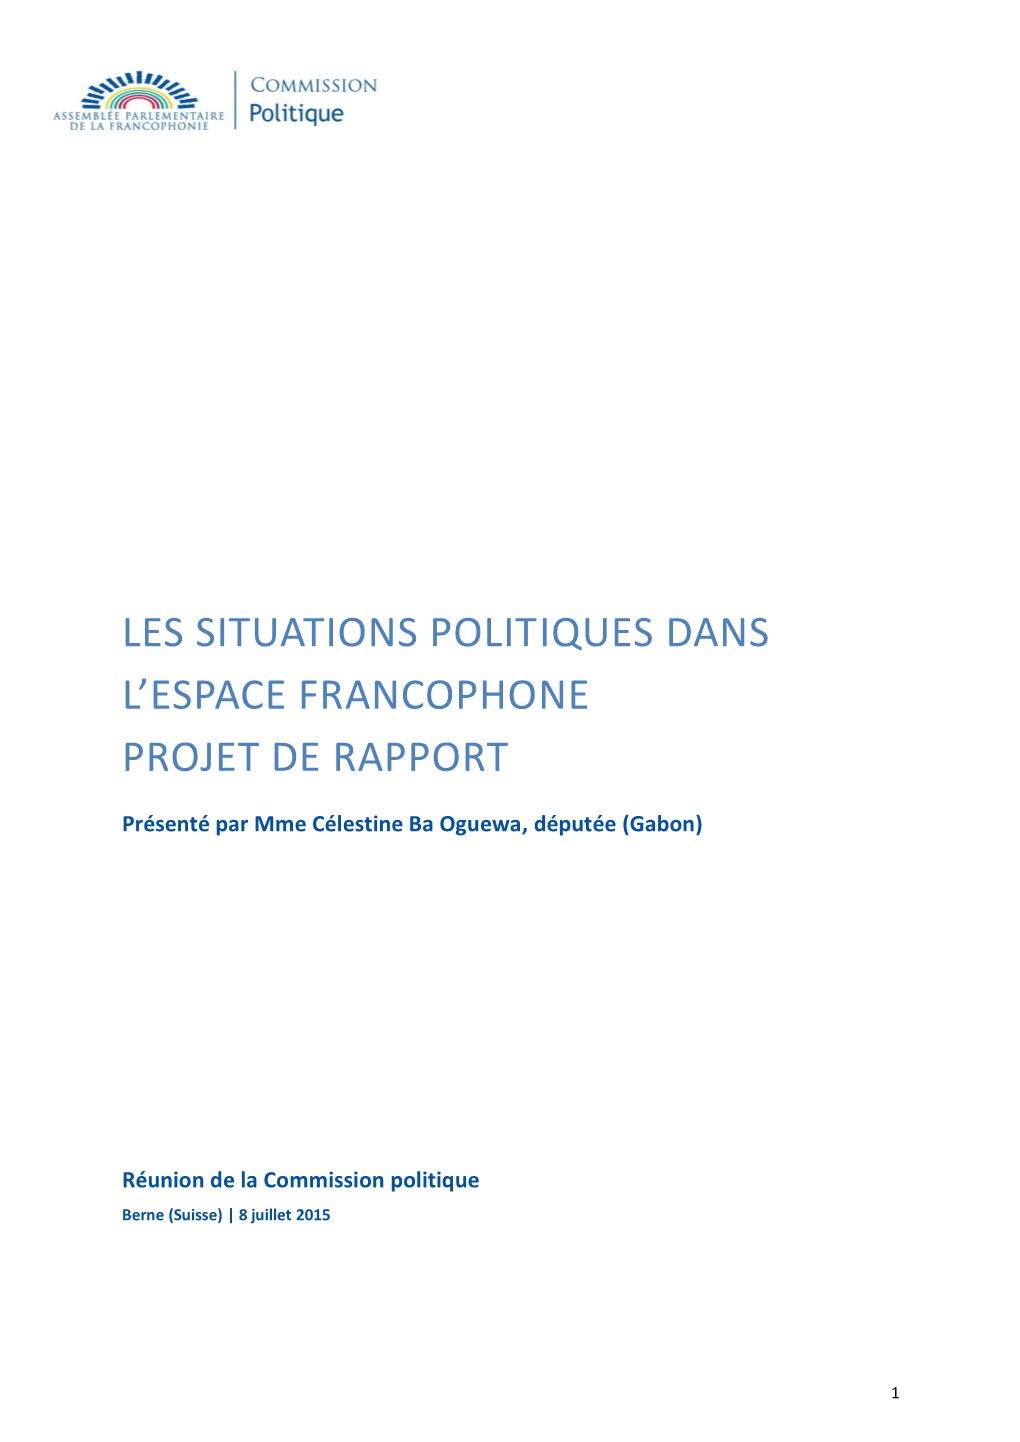 Les Situations Politiques Dans L'espace Francophone